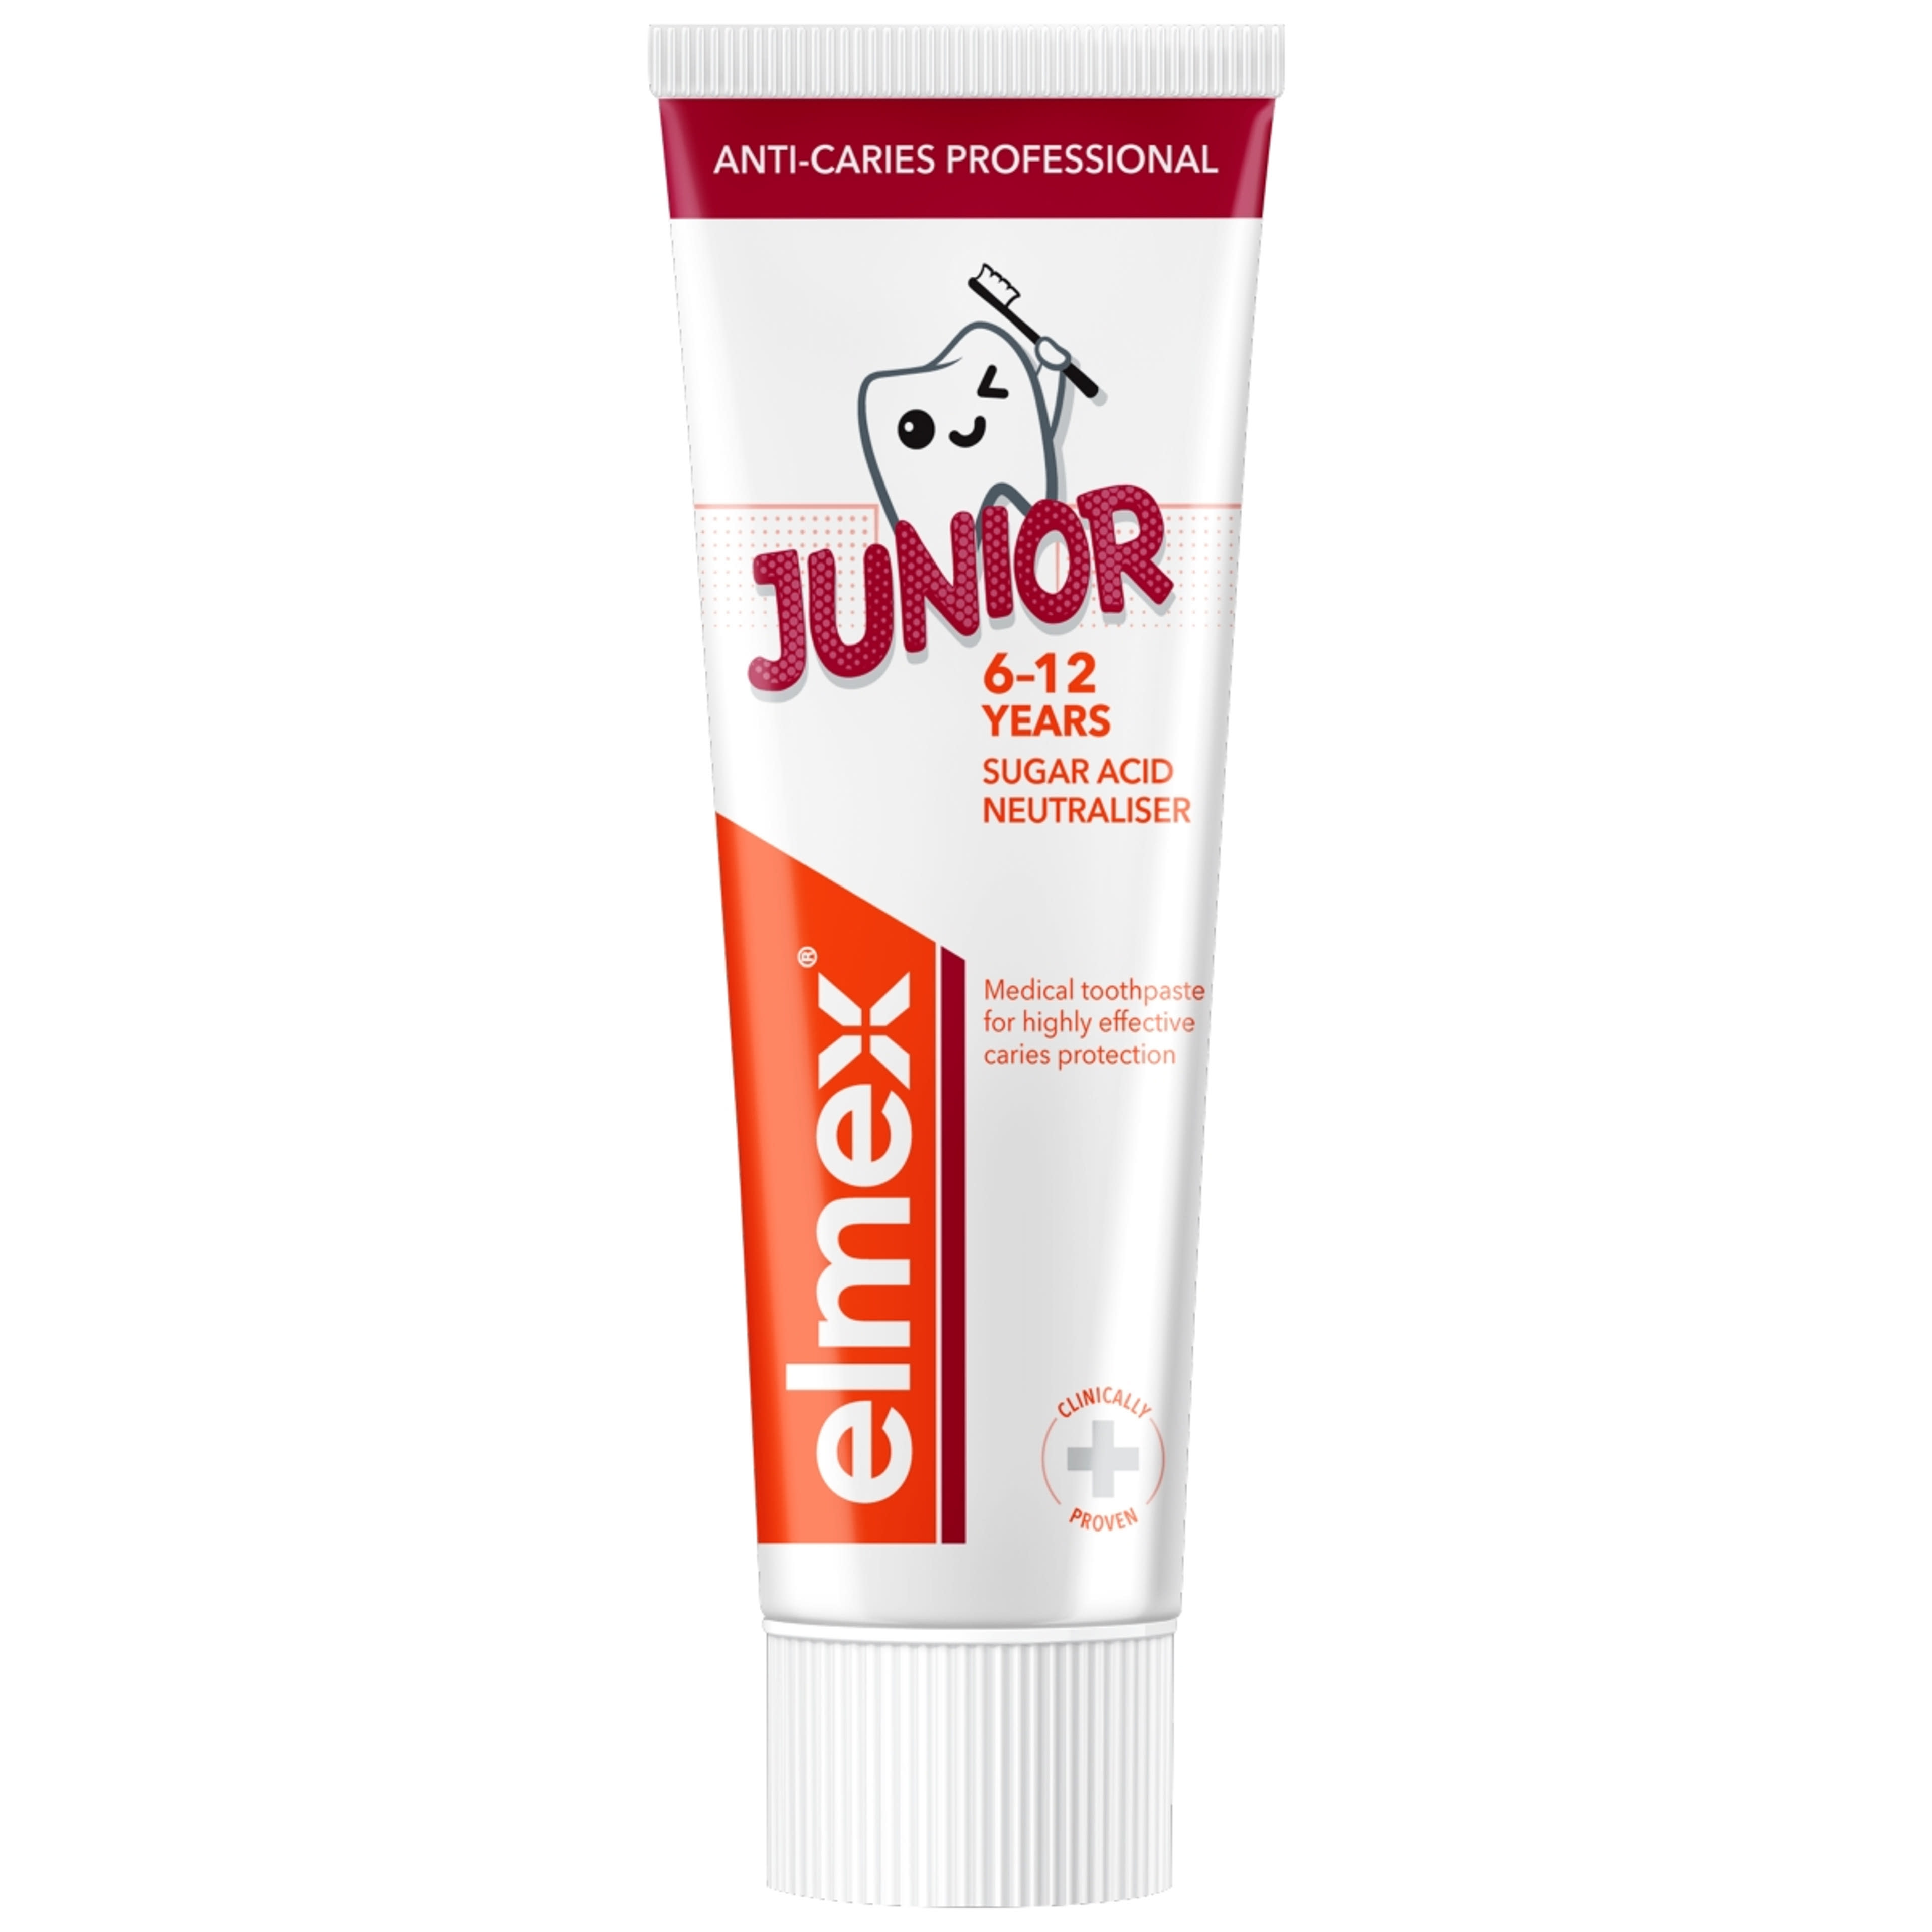 Elmex Anti-Caries Professional Junior fogkrém 6-12 éves gyerekeknek - 75 ml-3